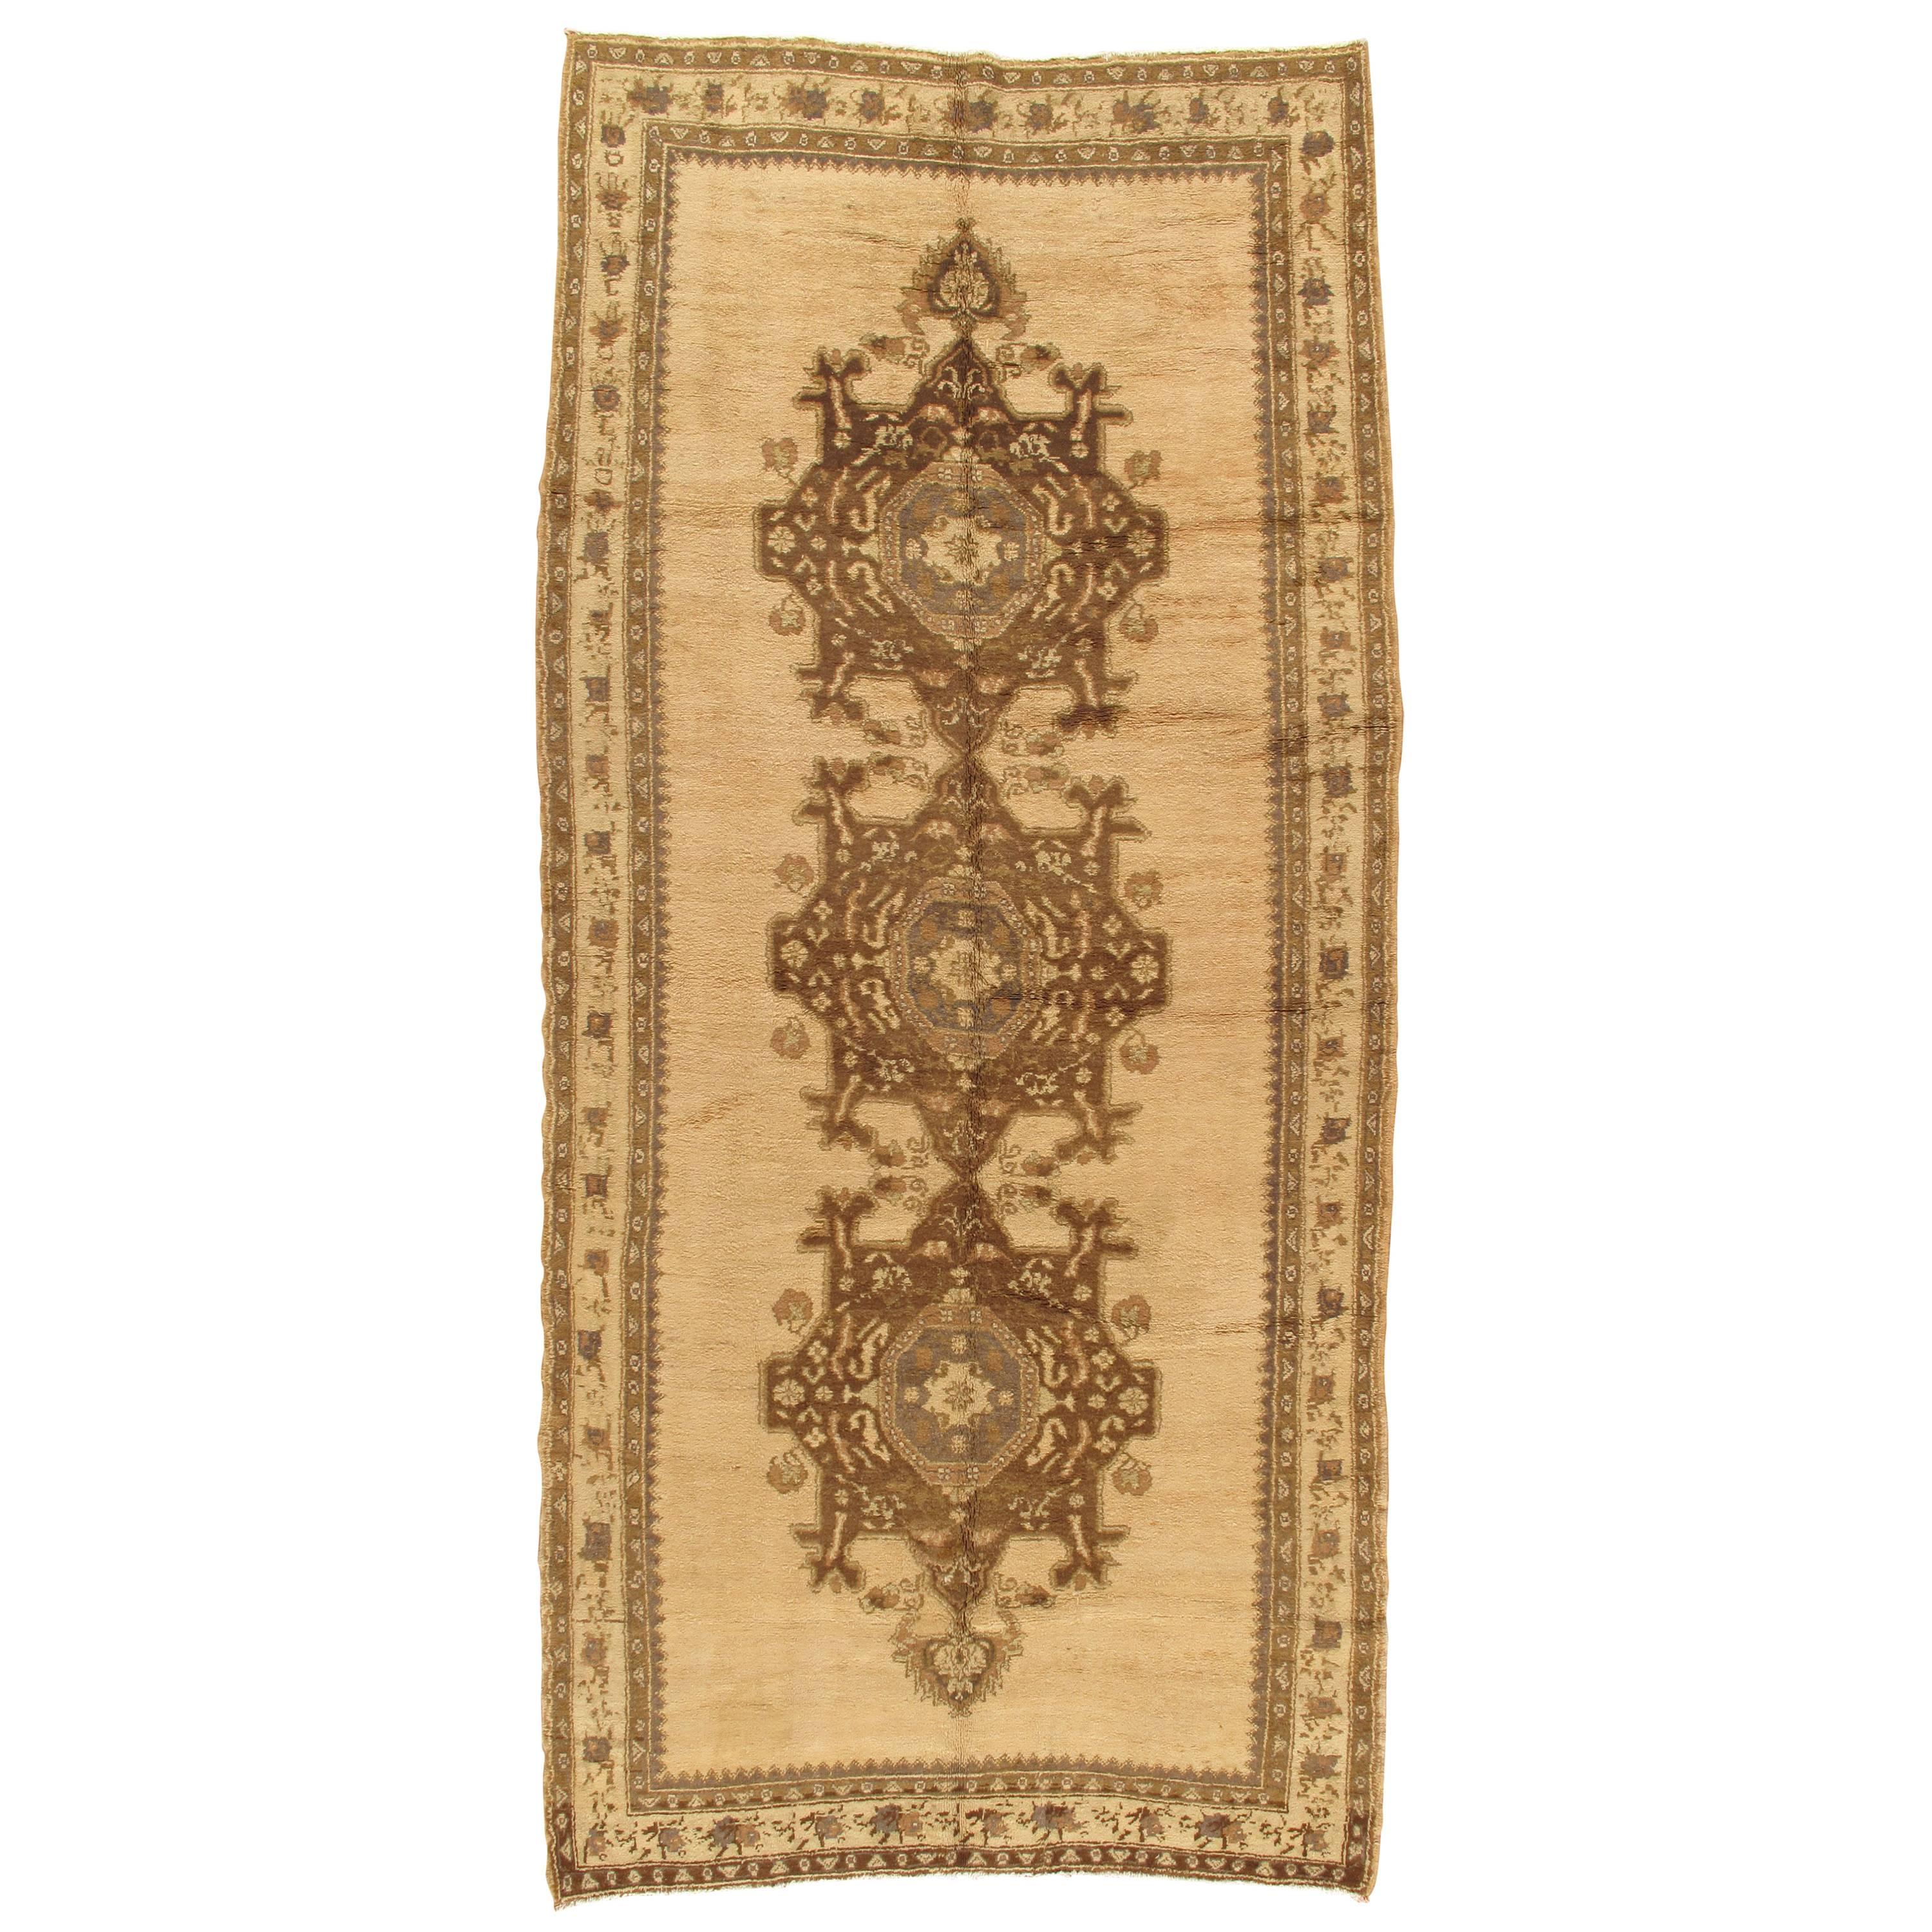 Vintage Oushak Carpet, Handmade Oriental Rug, Beige and Brown